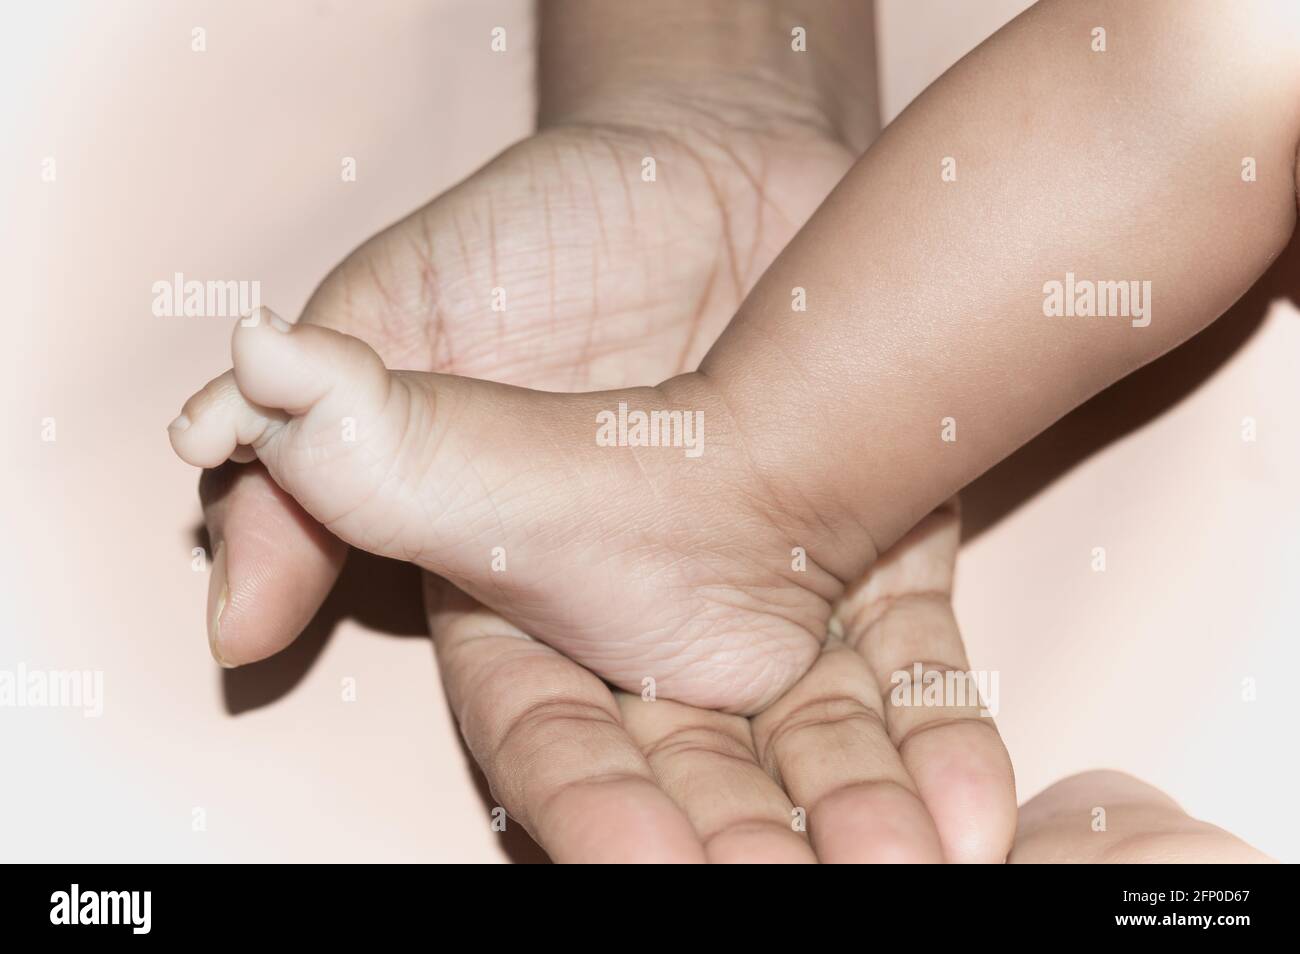 Neugeborener Baby-Fuß auf der väterlichen Handfläche. Füße eines kleinen Kleinkindes in der Handfläche seines Vaters. Nahaufnahme. Vaterschaft Elternschaft Kinderbetreuung Hintergrund. Stockfoto